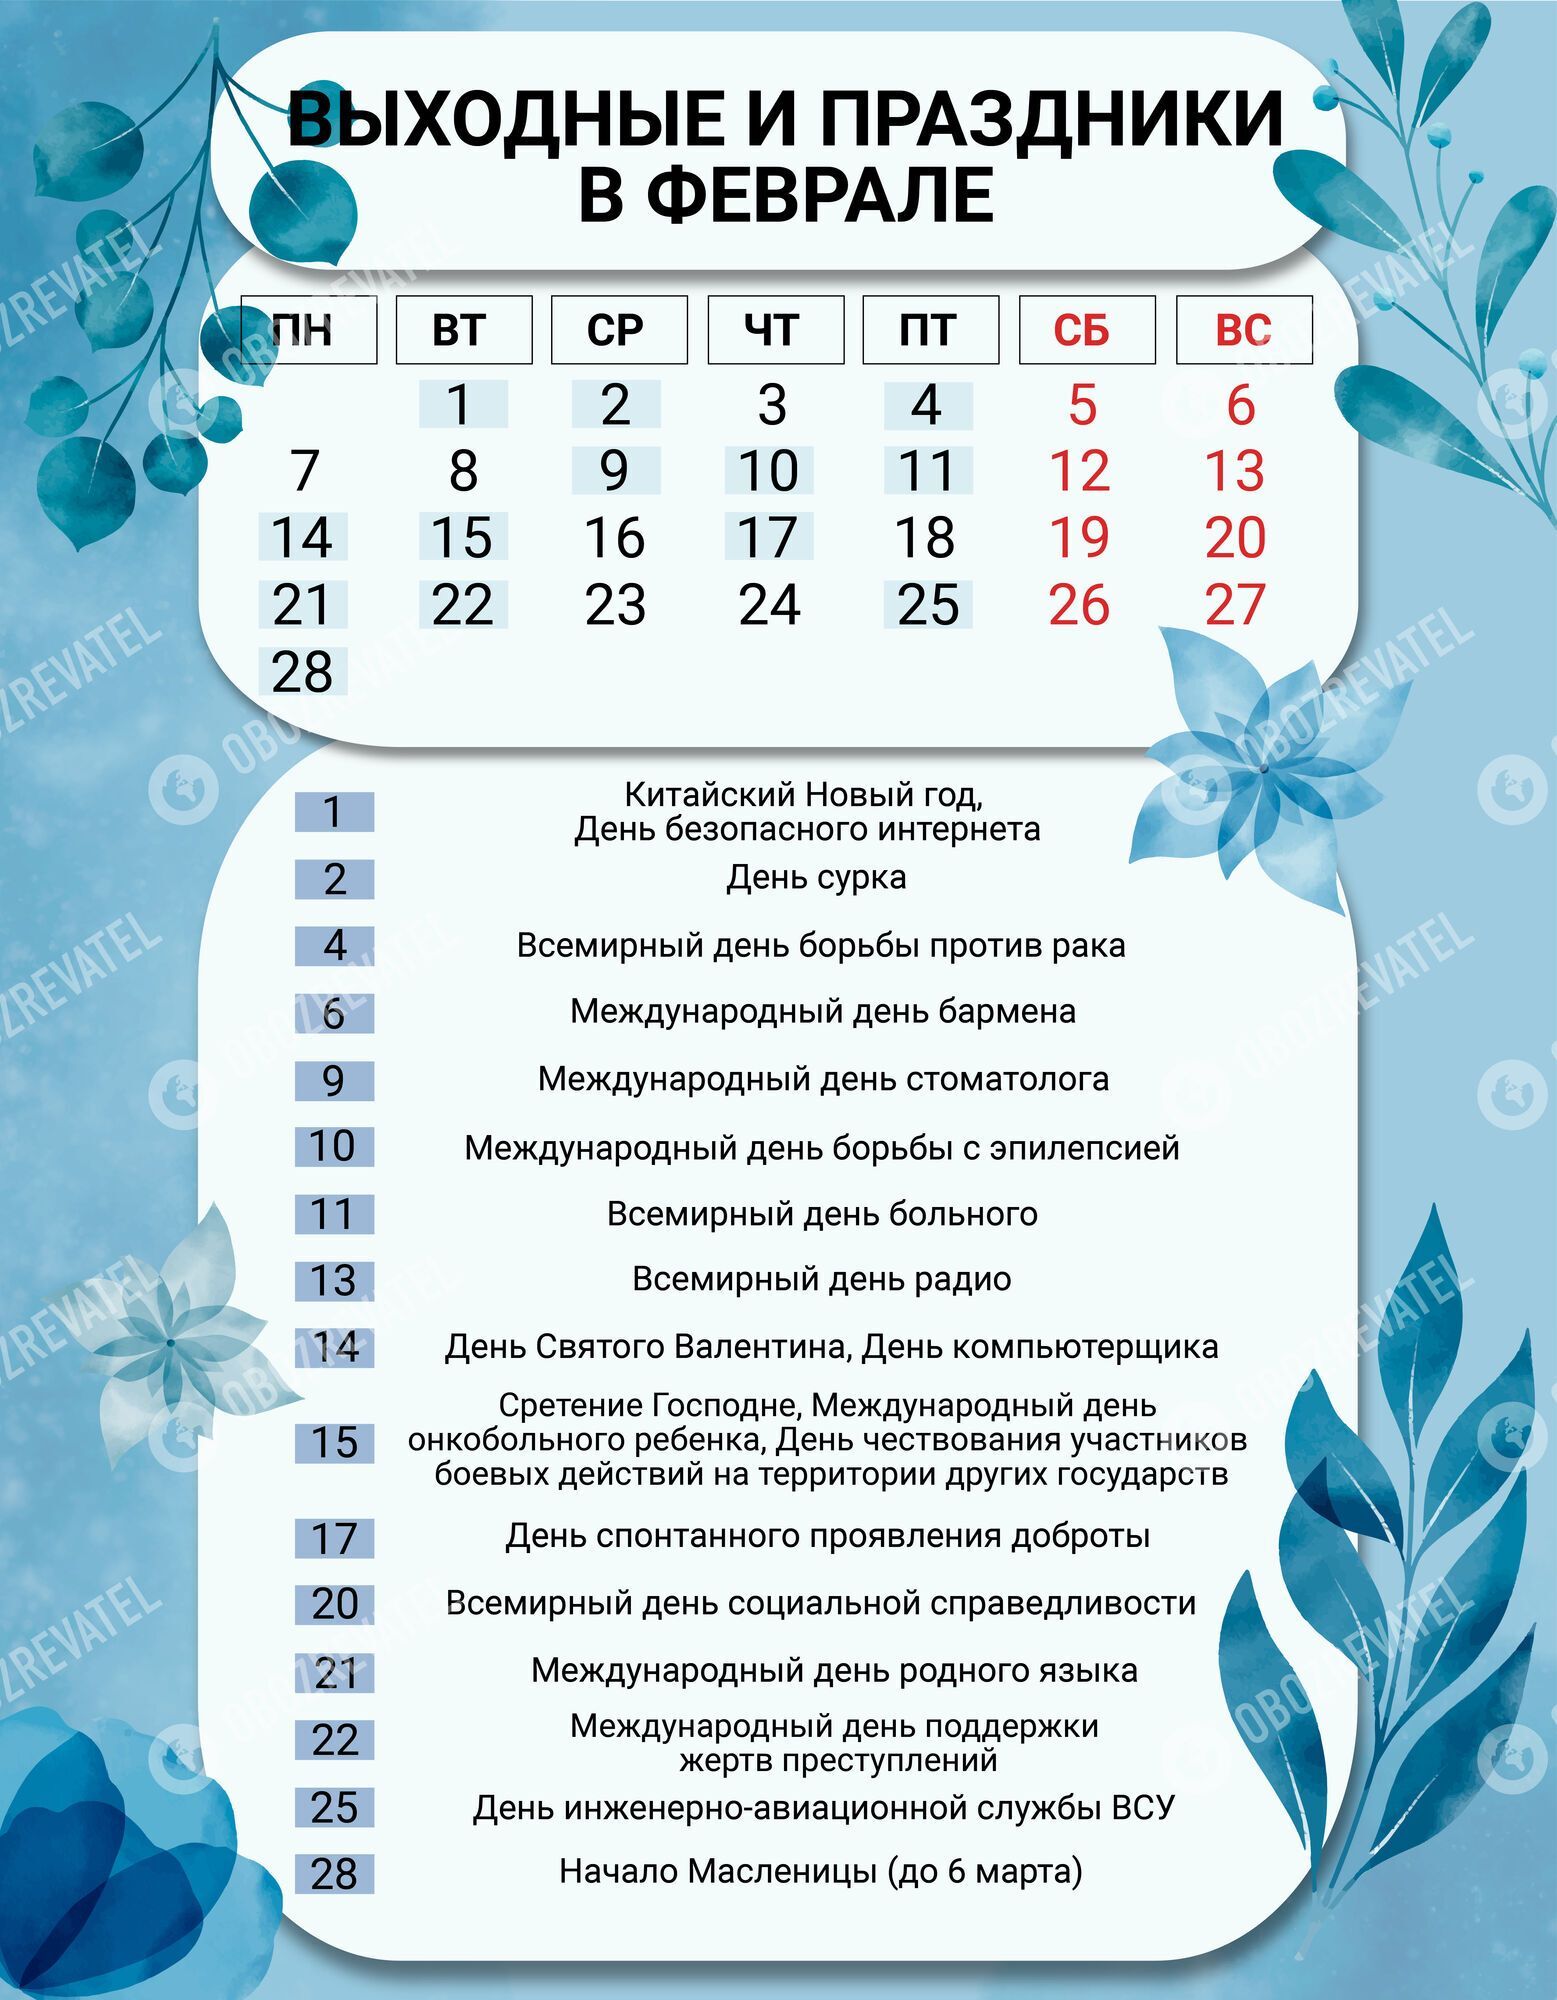 Выходные и праздники в феврале 2022 года в Украине